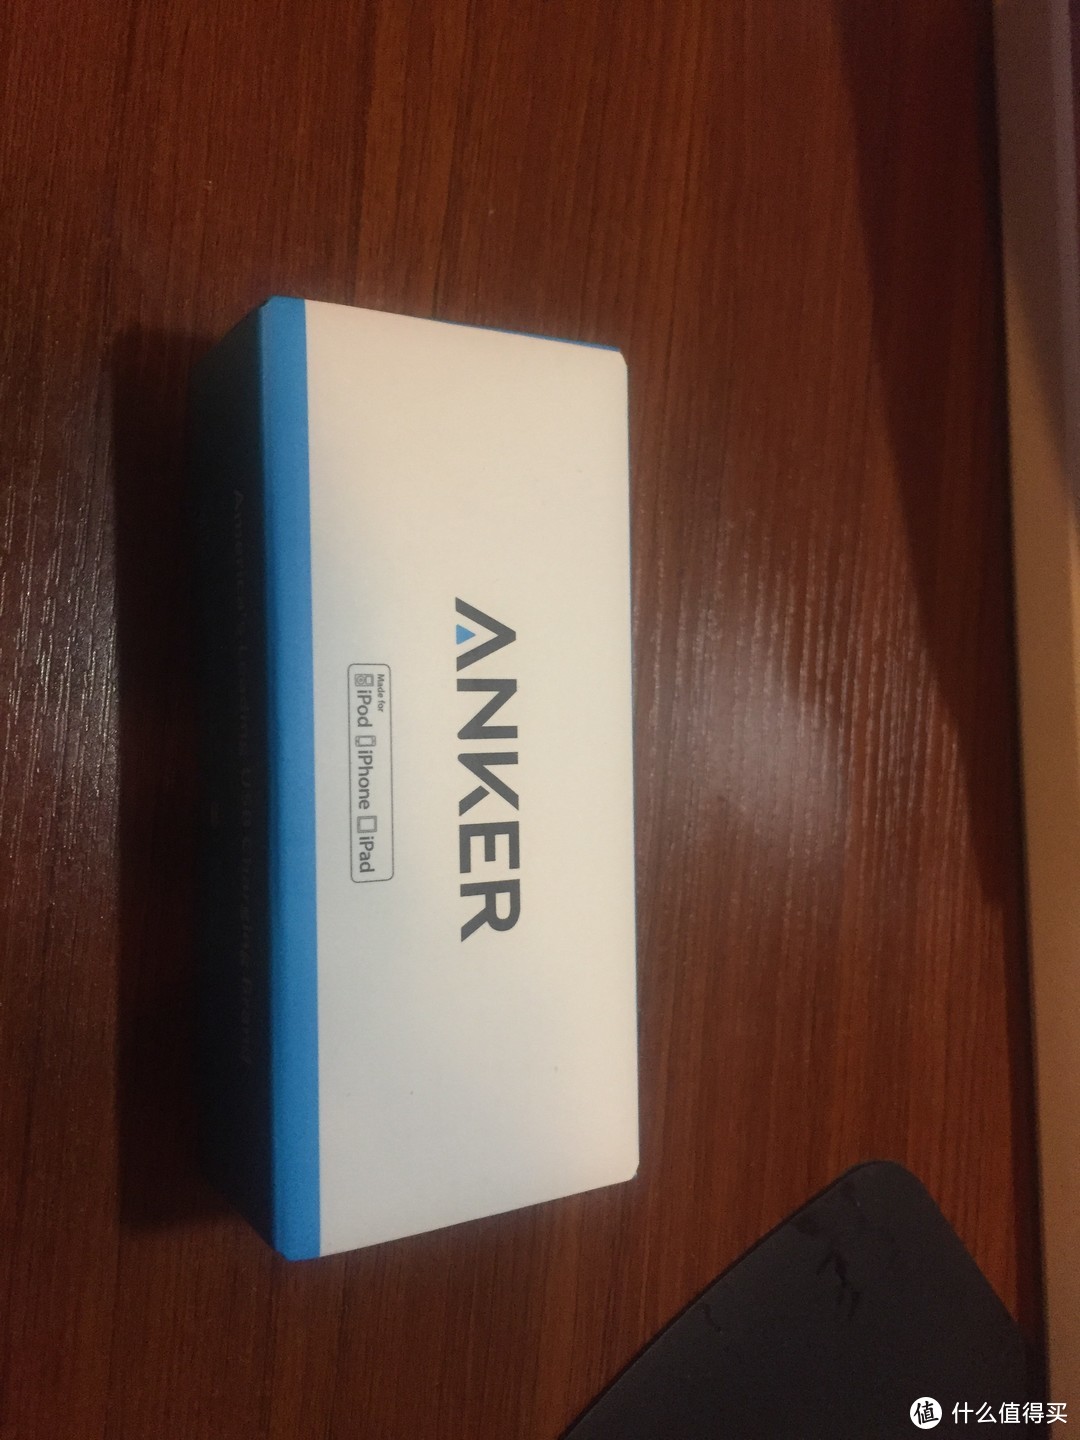 【简易体验】Anker 安克 A8121691 PowerLine+ 苹果数据线